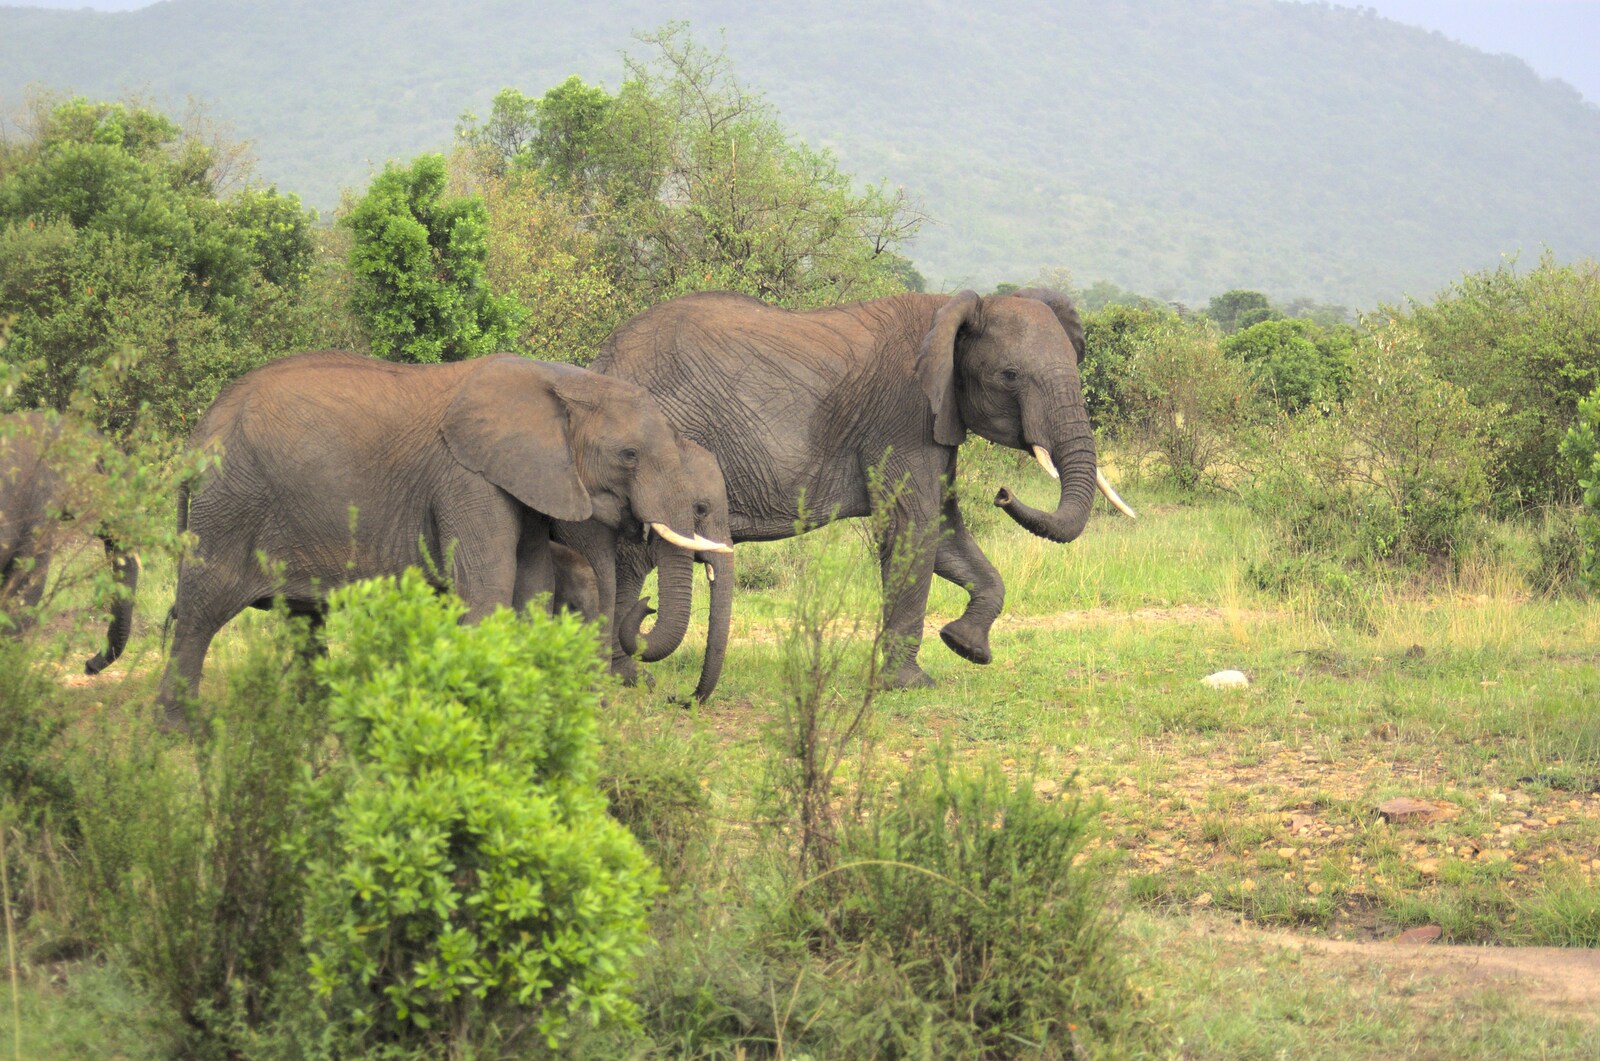 Maasai Mara Safari and a Maasai Village, Ololaimutia, Kenya - 5th November 2010: Elephants with a baby in tow